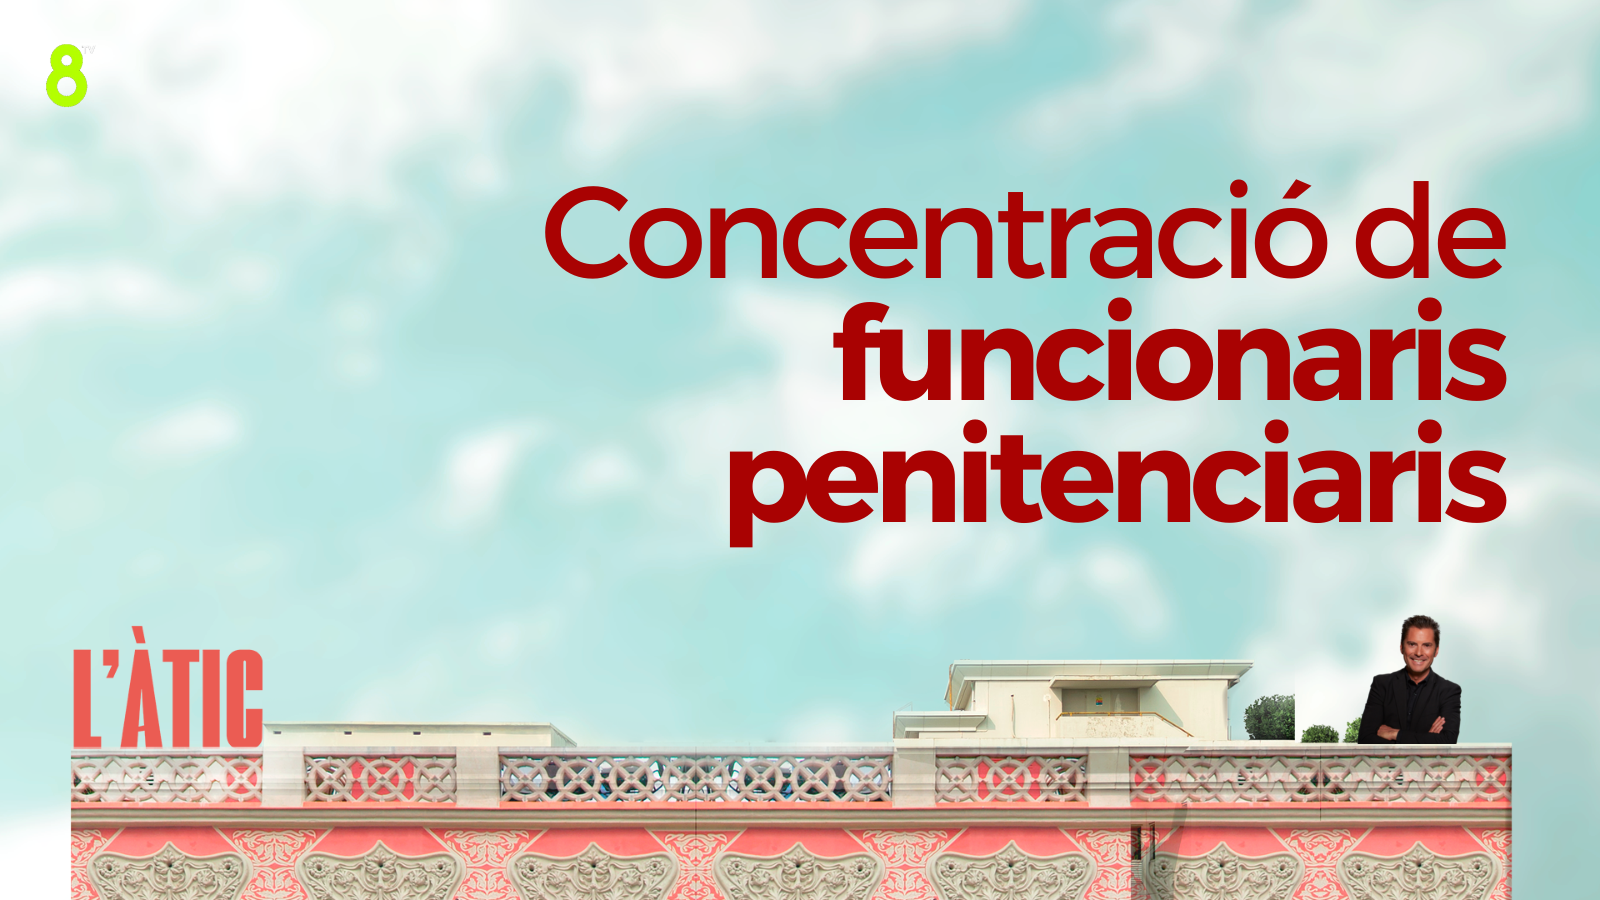 23/03/2023 - CONCENTRACIÓ DE FUNCIONARIS PENITENCIARIS PER L'AUGMENT D'AGRESSIONS